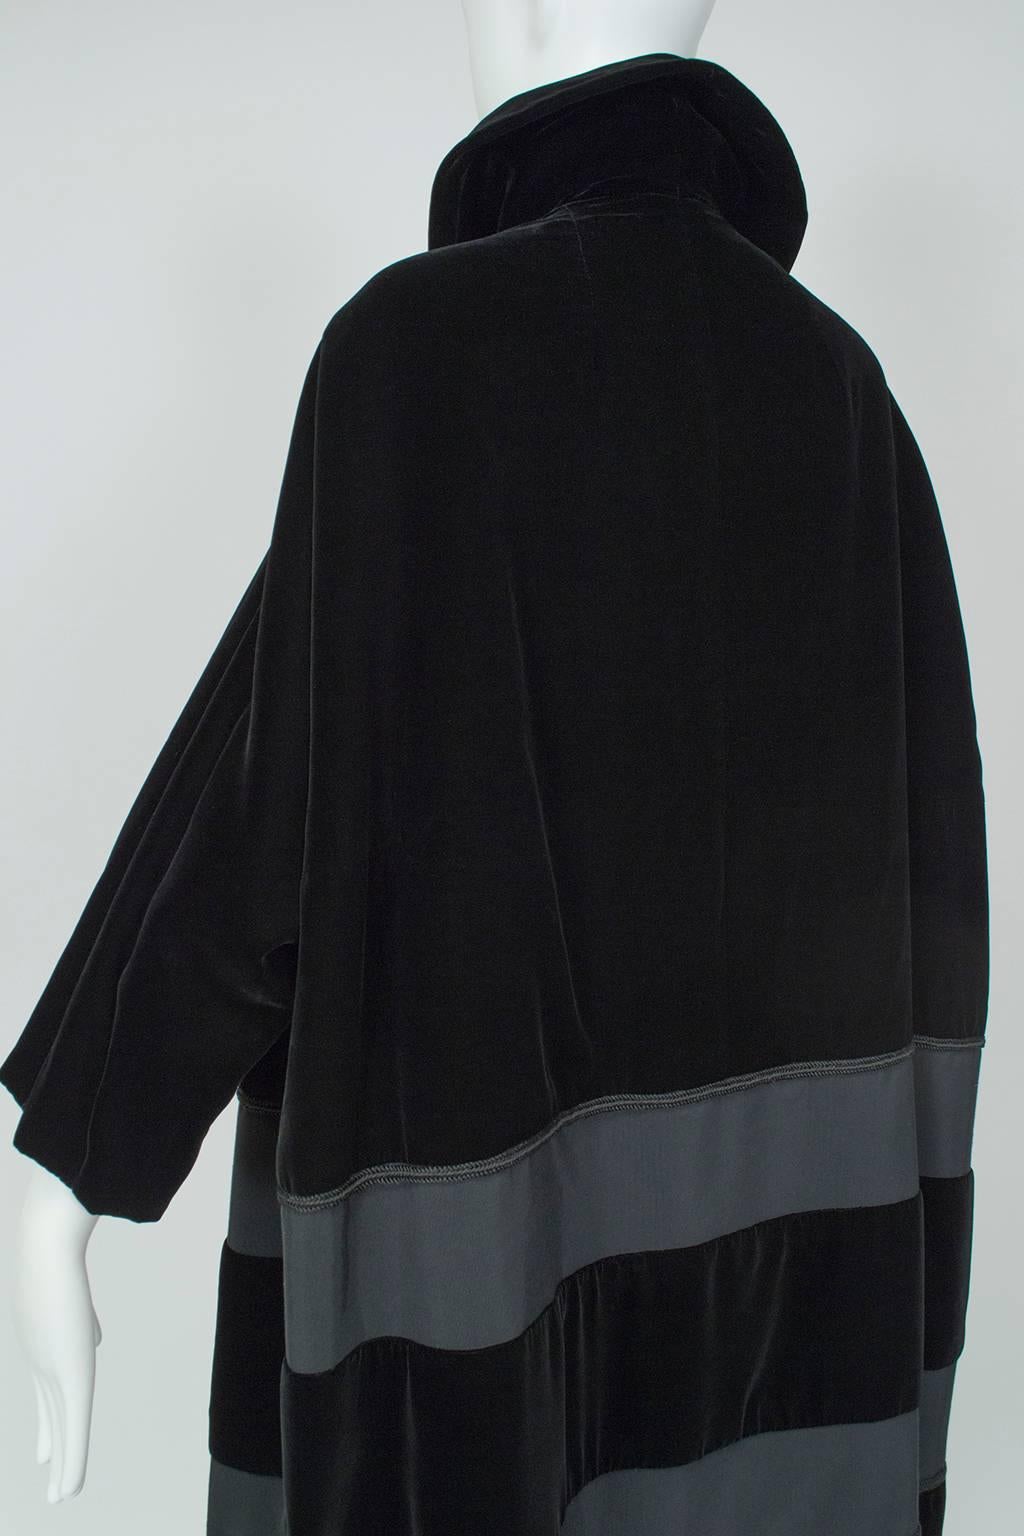 Black Velvet and Faille Stripe Oversized Amorphous Teddy Bear Coat - L-XL, 1960s 1